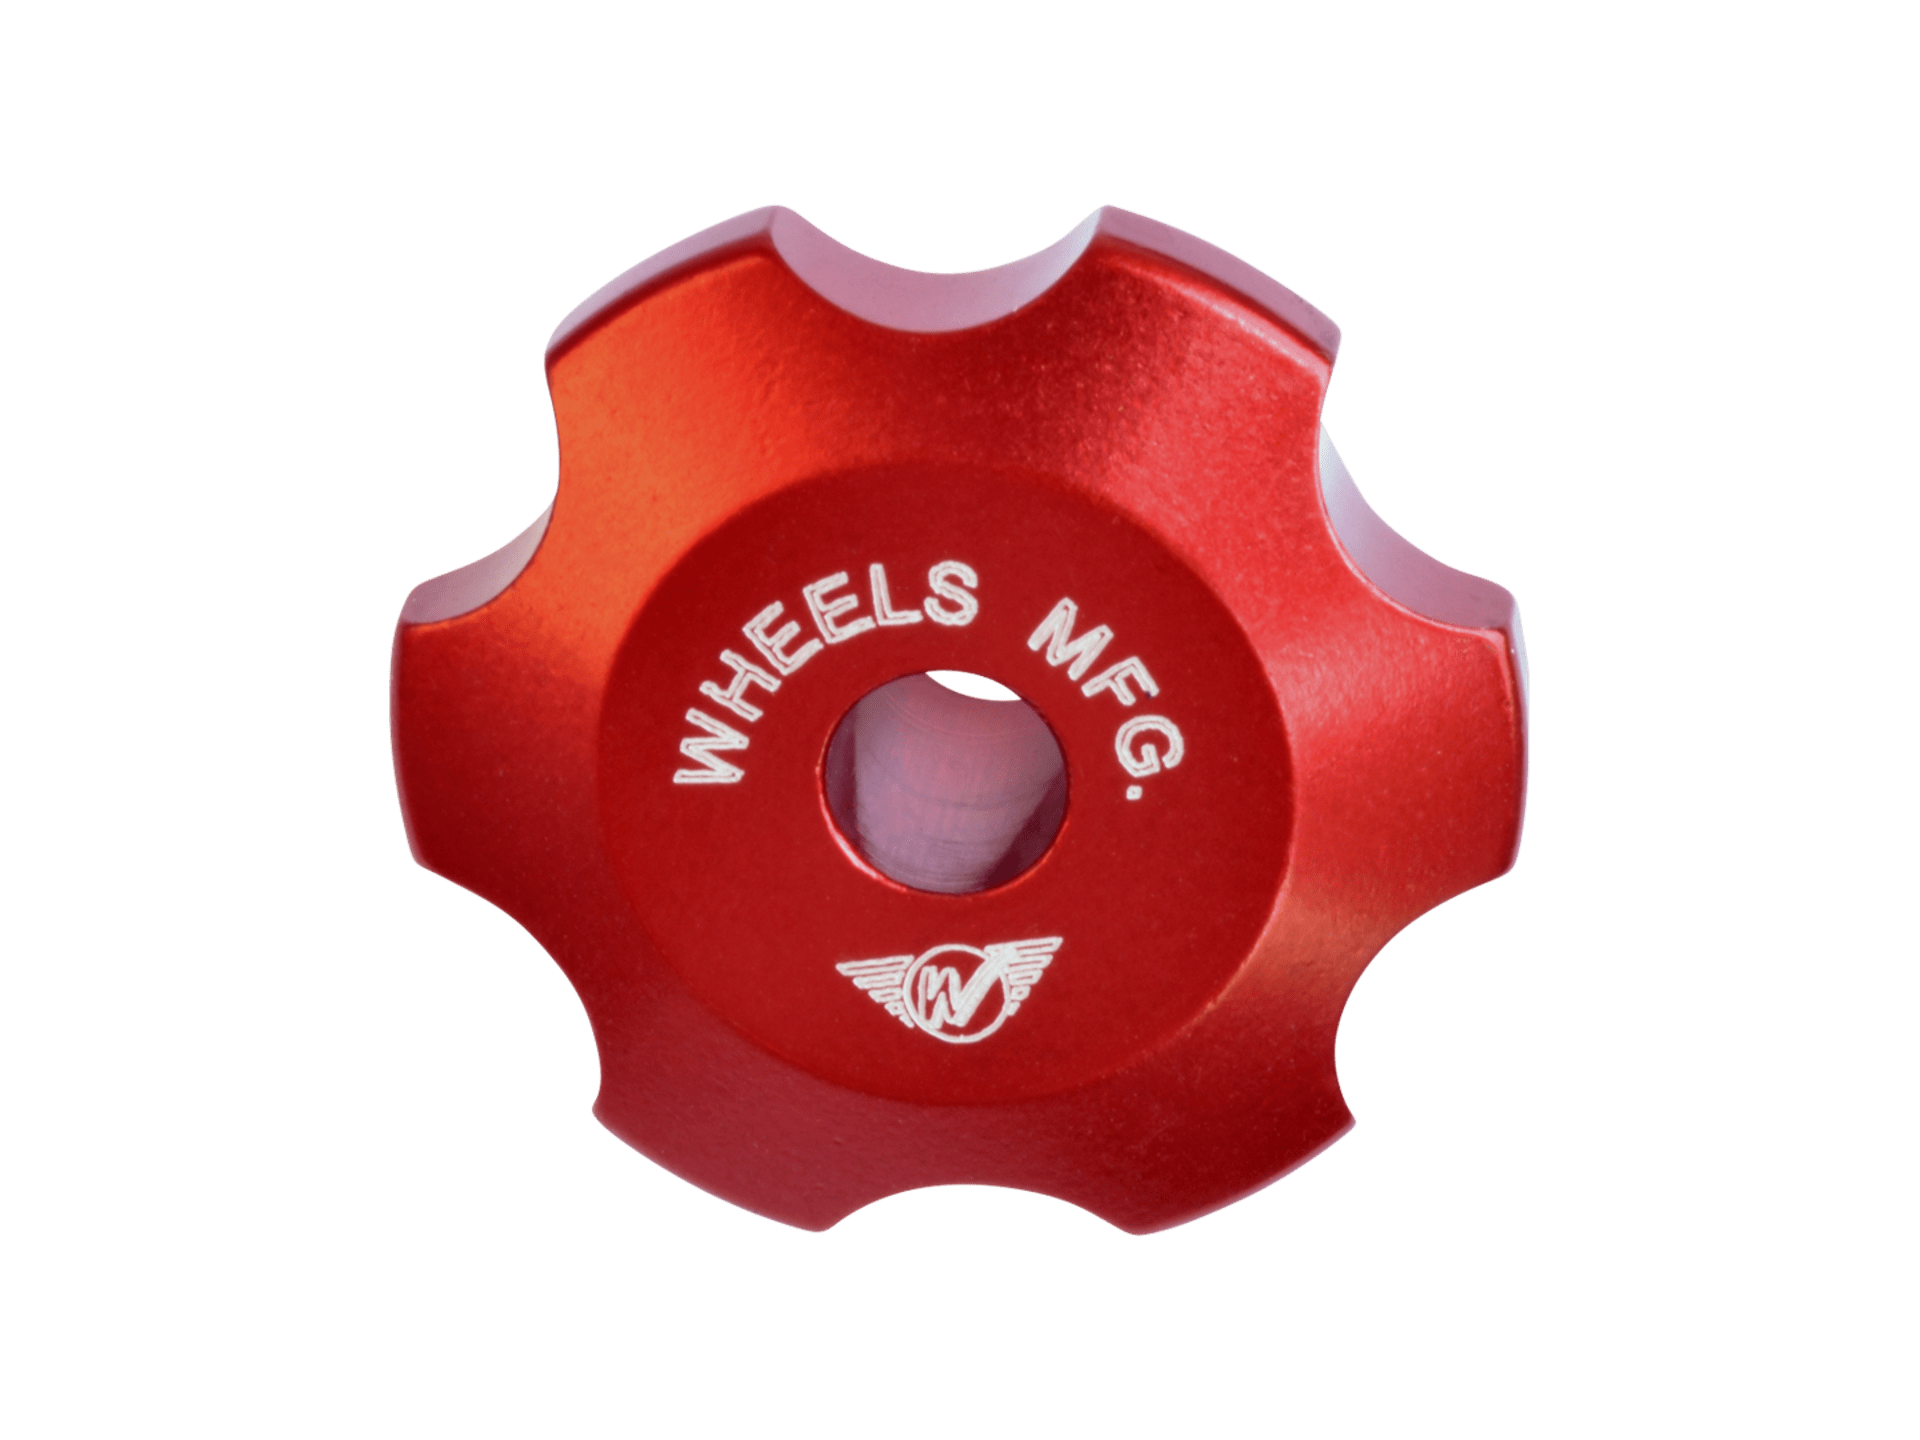 Wheels Manufacturing Shimano Crankset Preload Tool